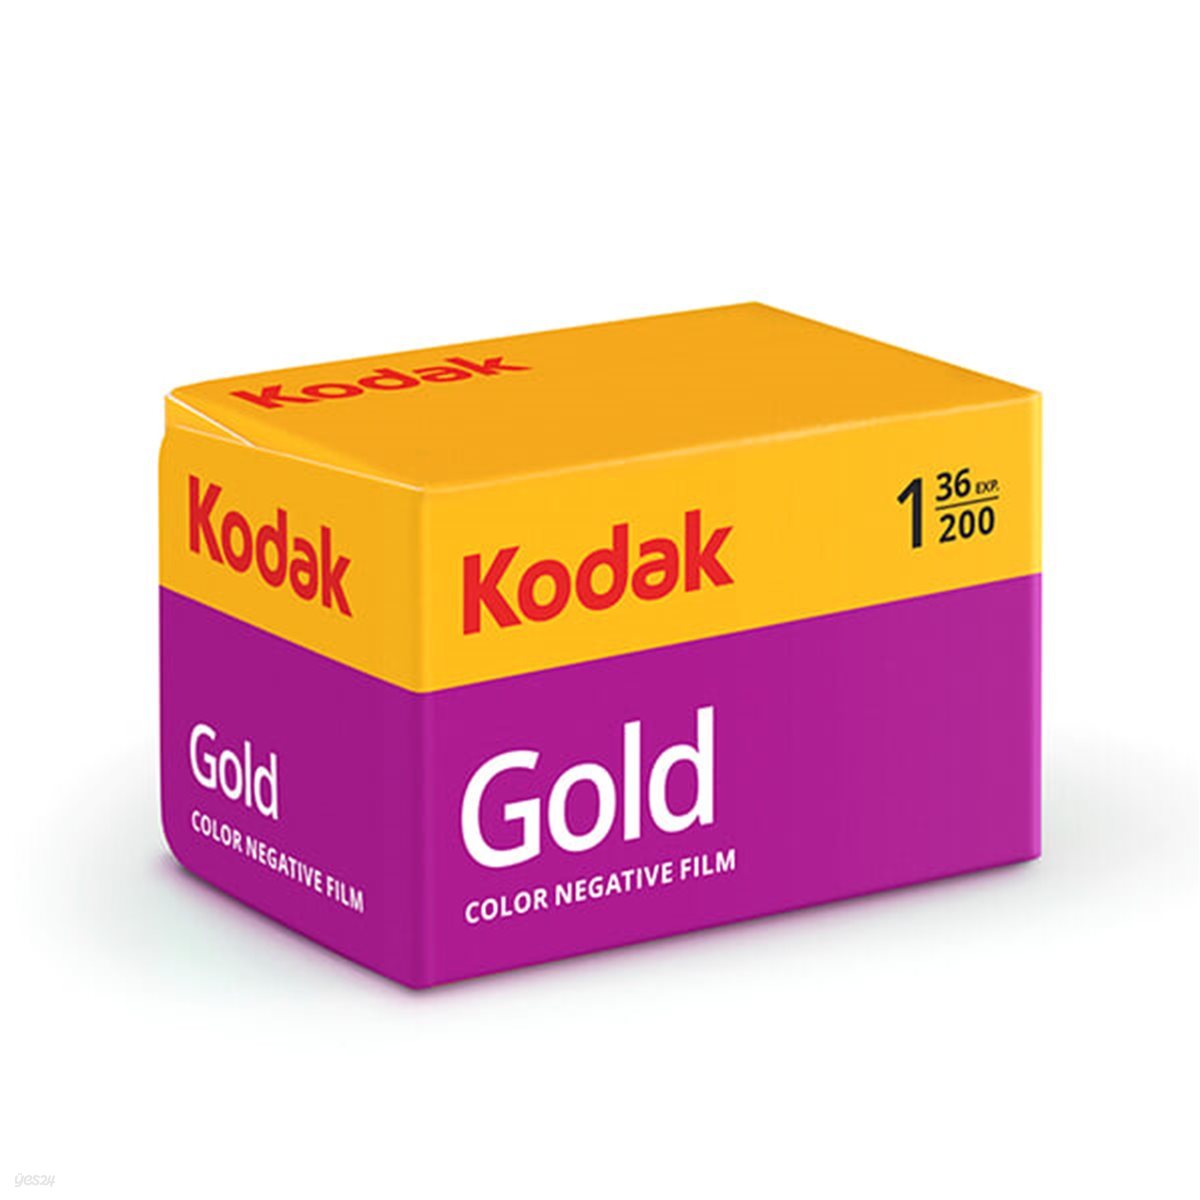 Kodak 코닥 컬러필름 골드 200-36컷